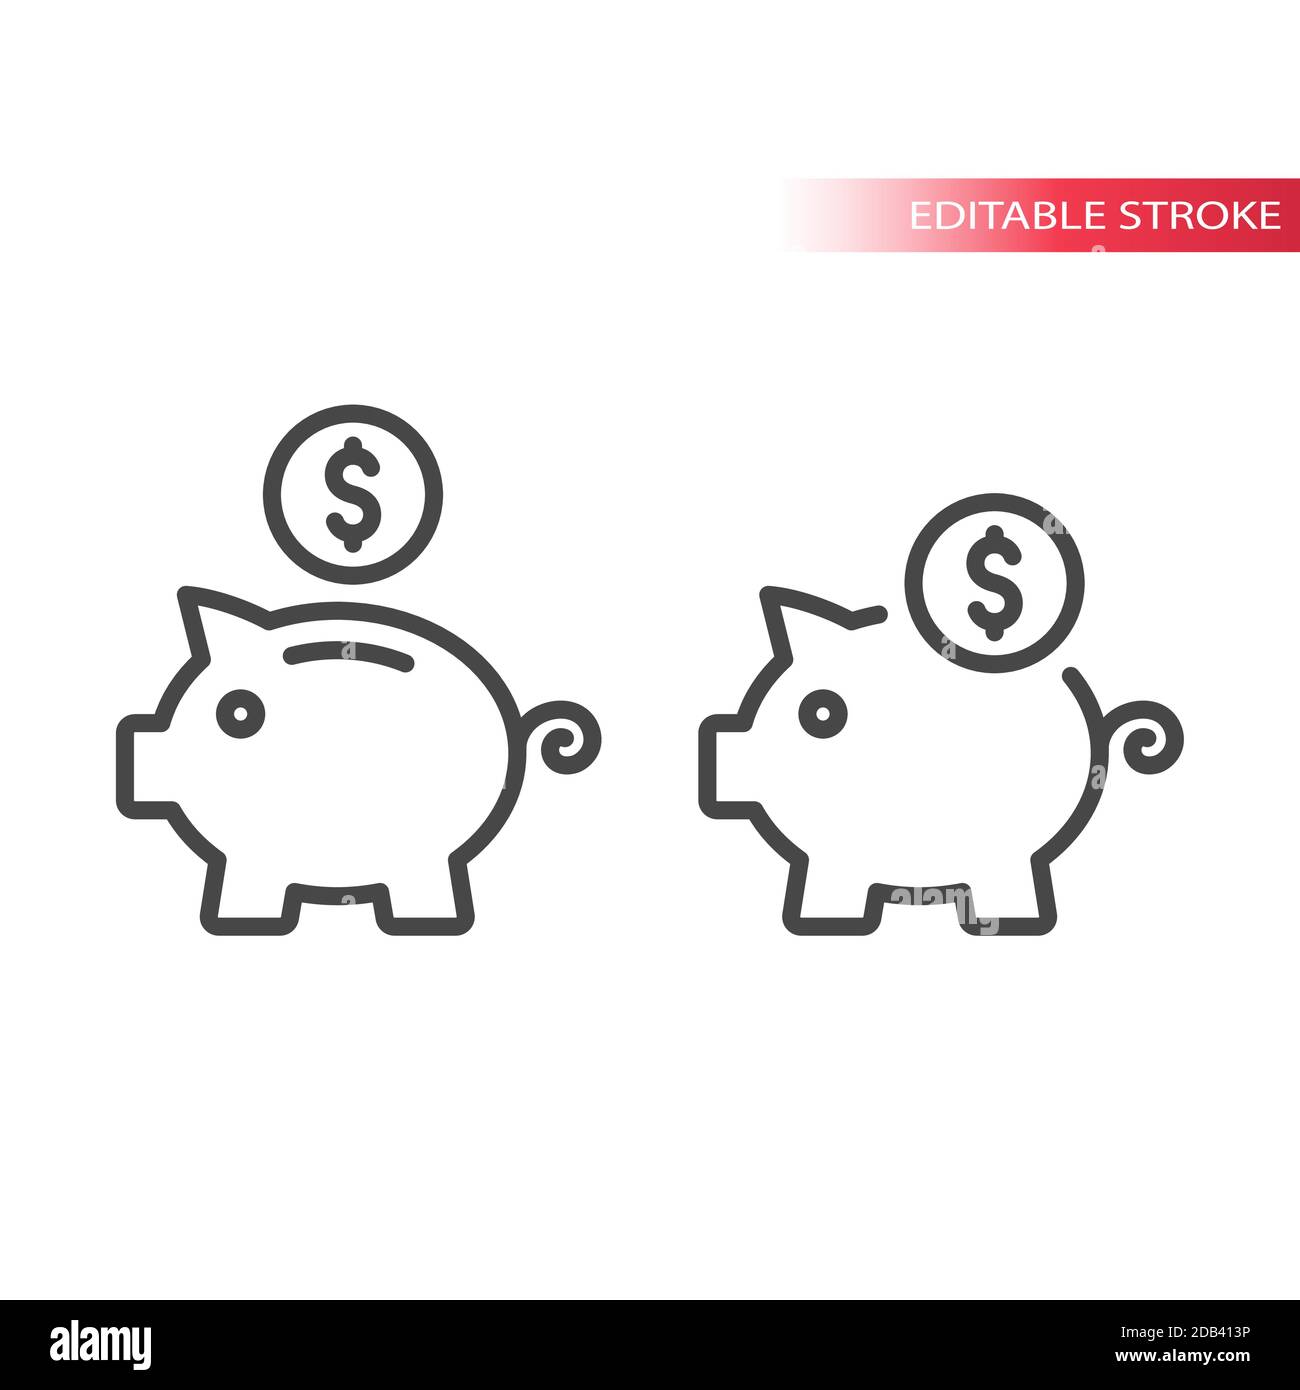 Piggy bank with dollar coin icon. Savings, money or financial concept editable stroke symbol. Stock Vector